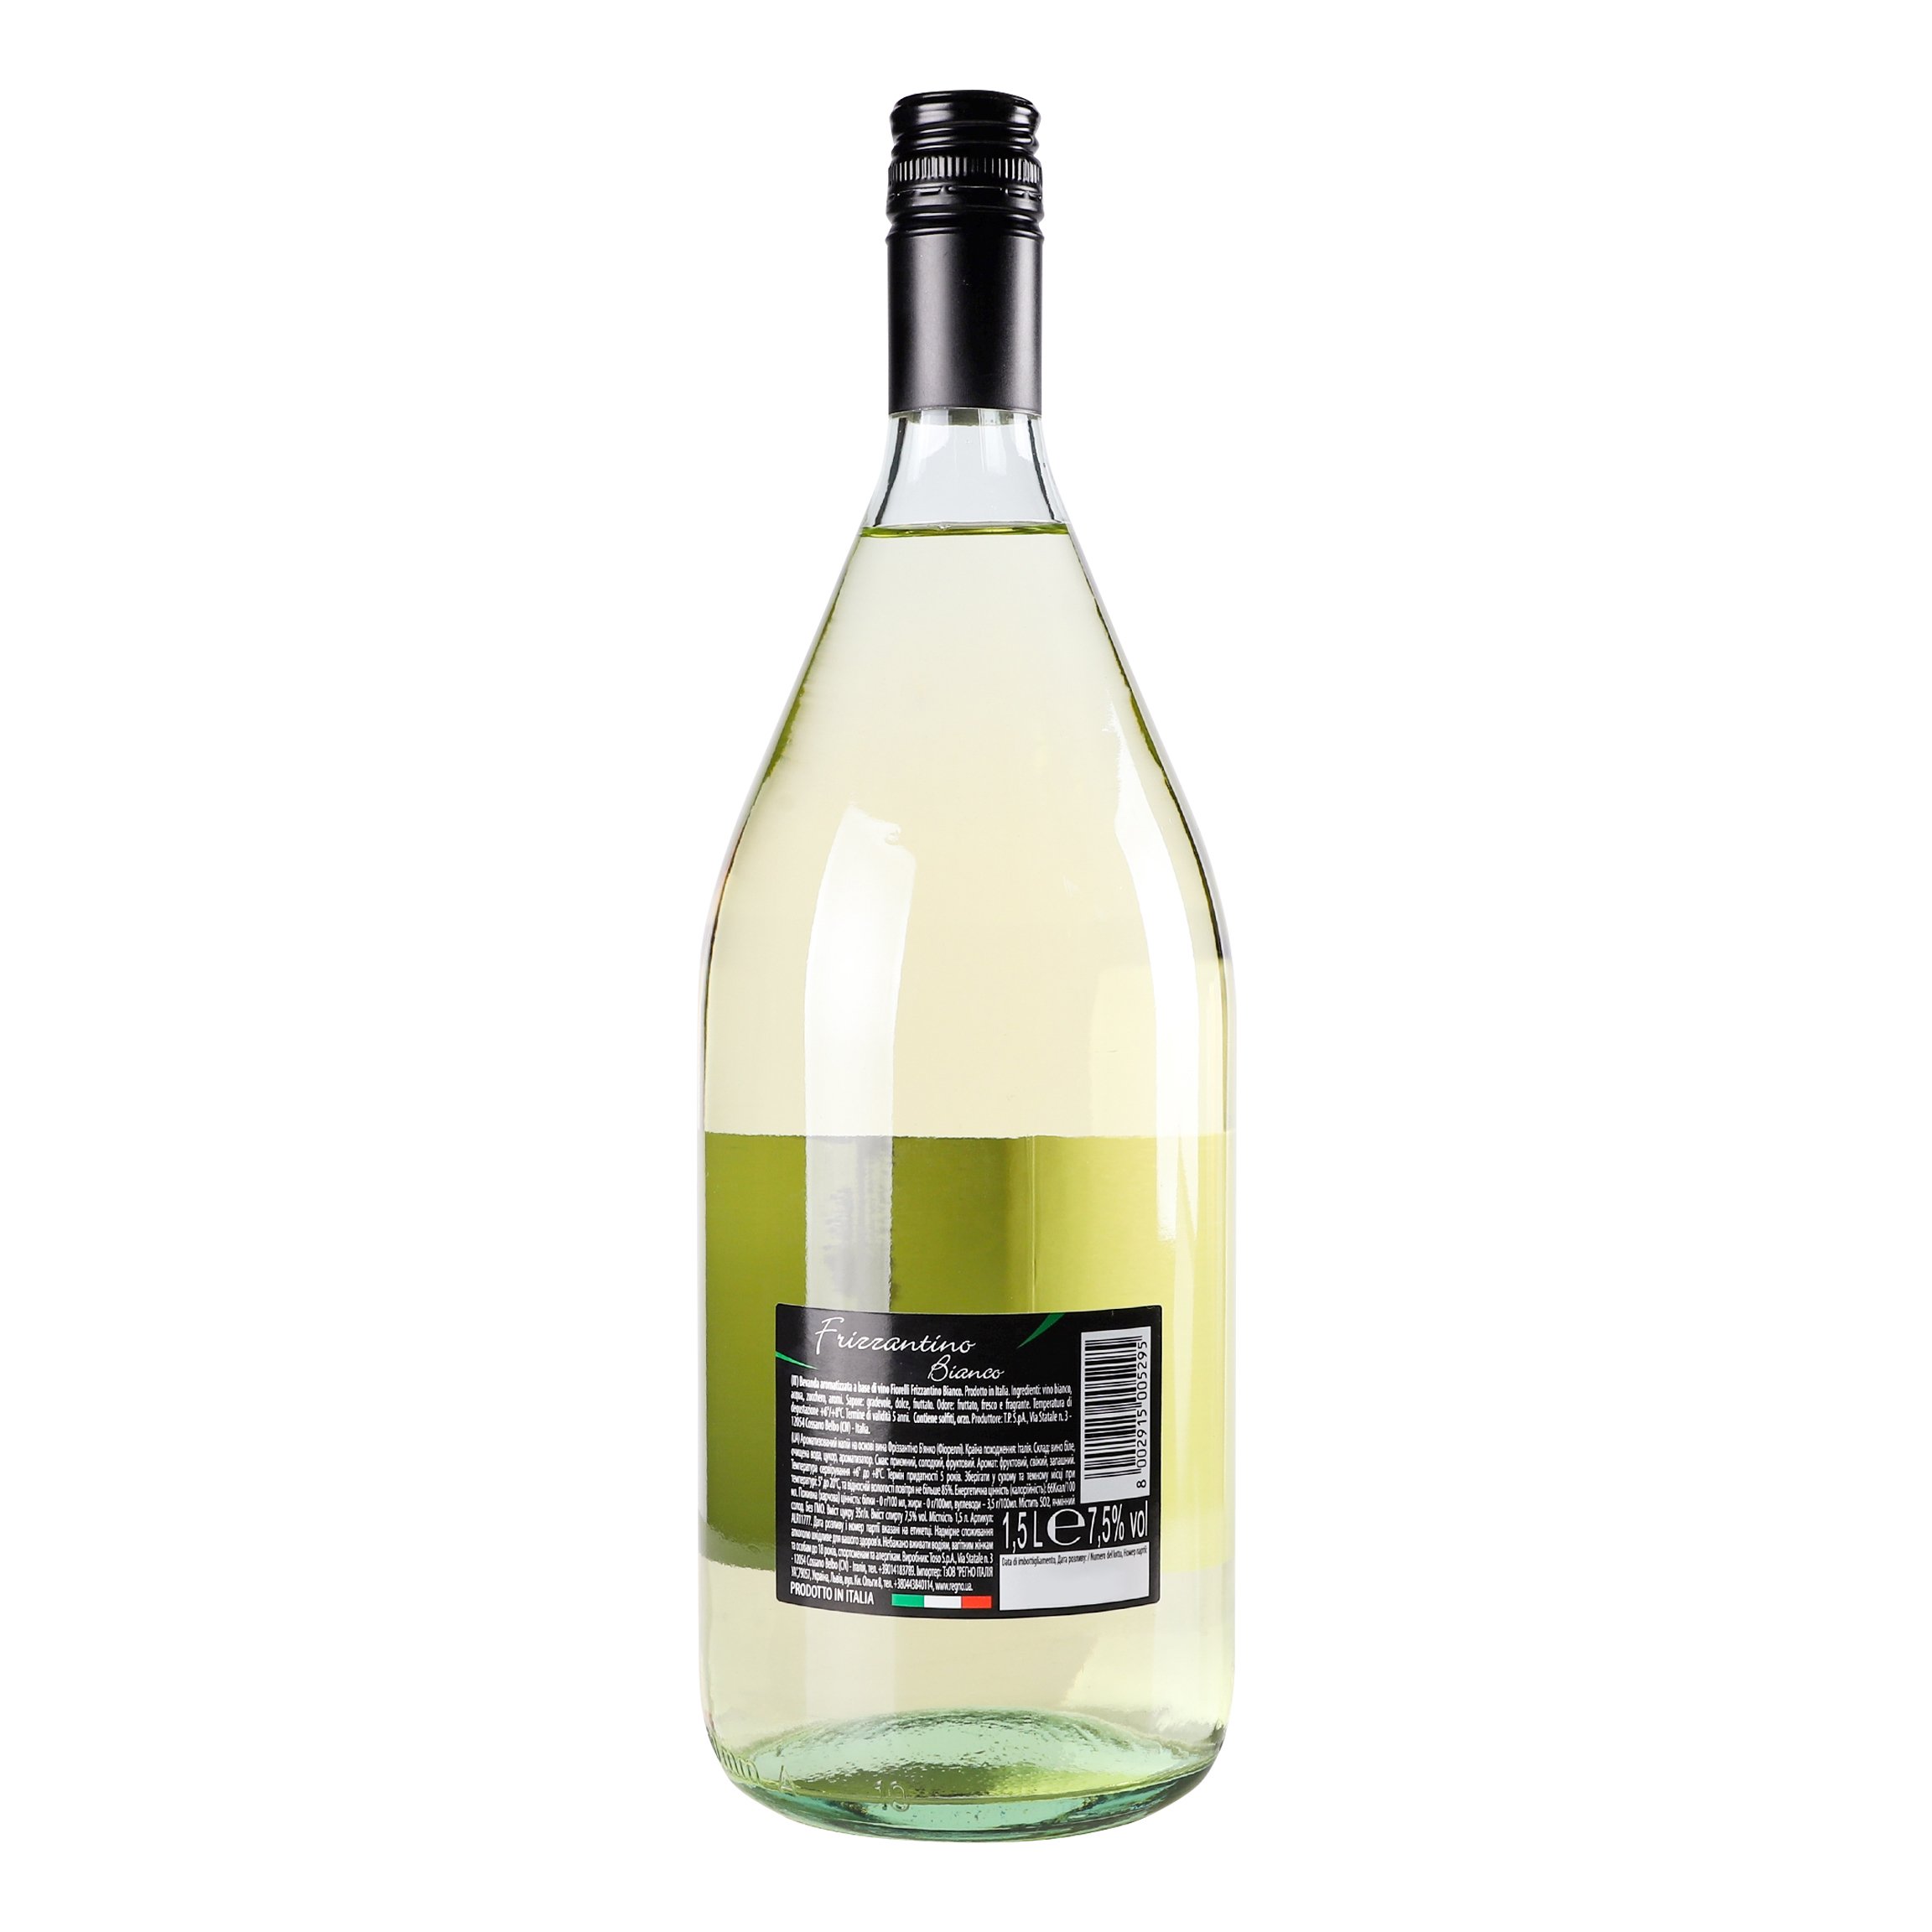 Напиток на основе вина Fiorelli Frizzantino Bianco, белый, полусладкий, 7,5%, 1,5 л (ALR6174) - фото 3